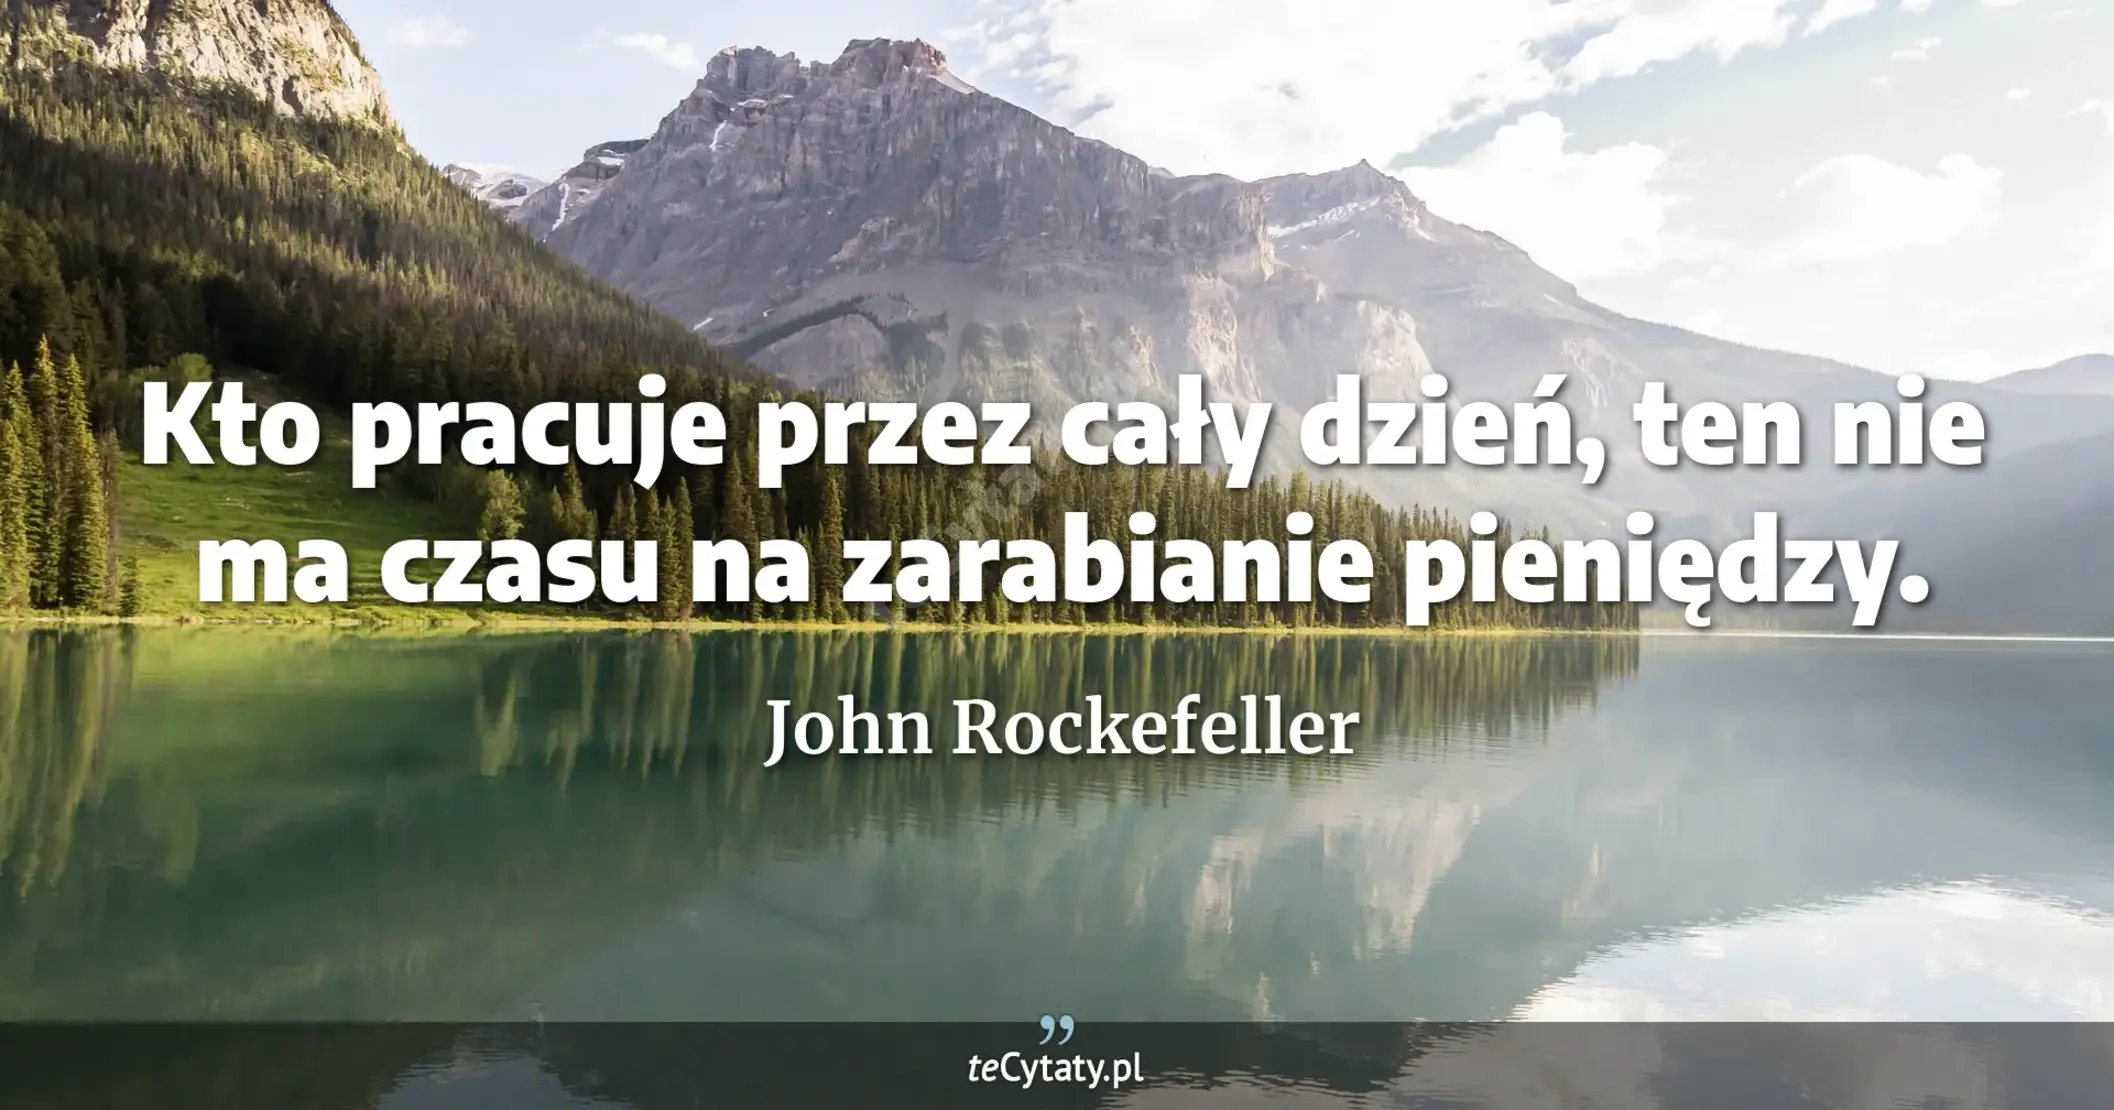 Kto pracuje przez cały dzień, ten nie ma czasu na zarabianie pieniędzy. - John Rockefeller